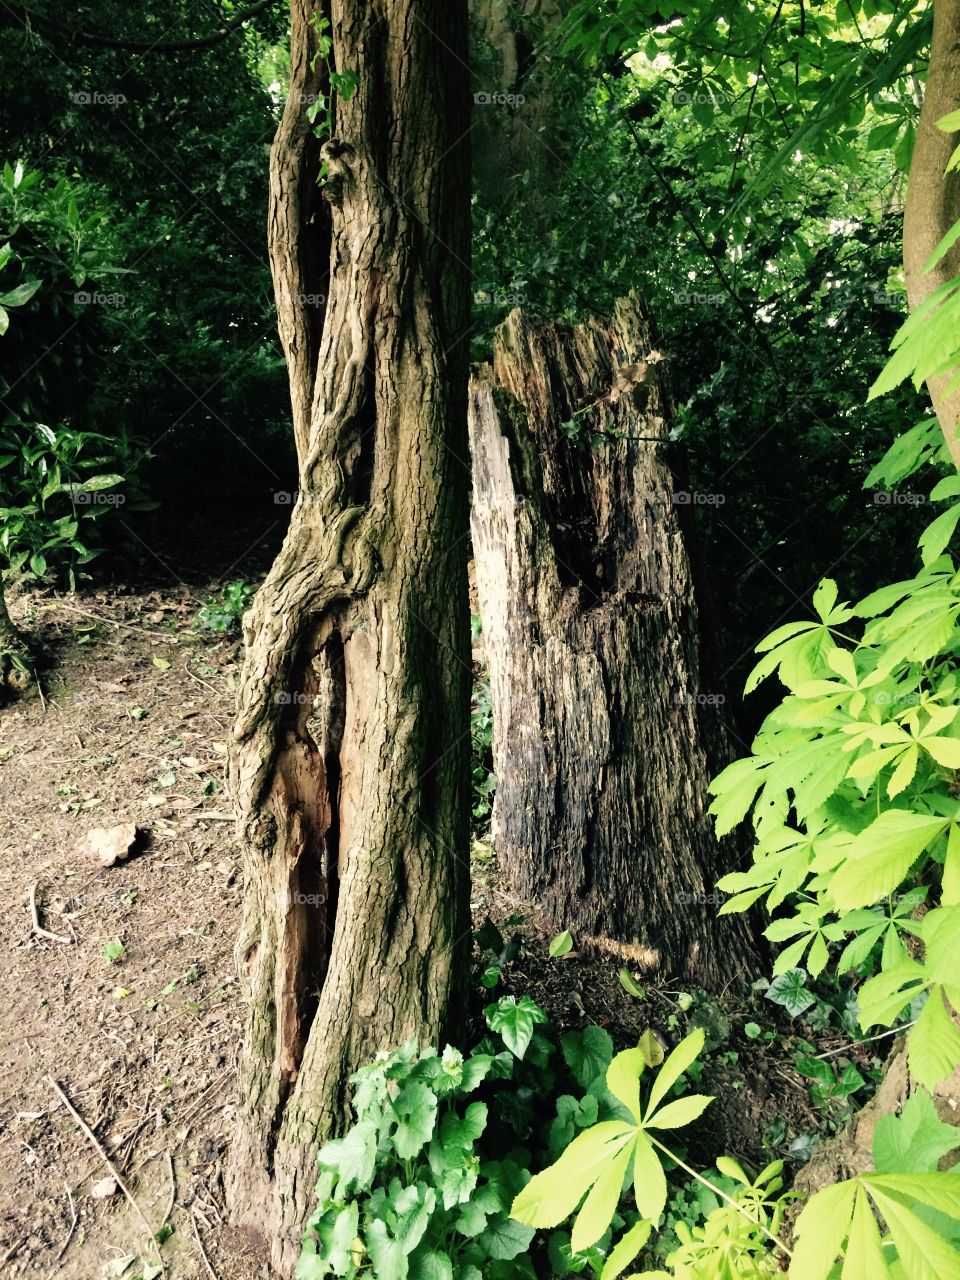 Old trees. Old rotten tree stump